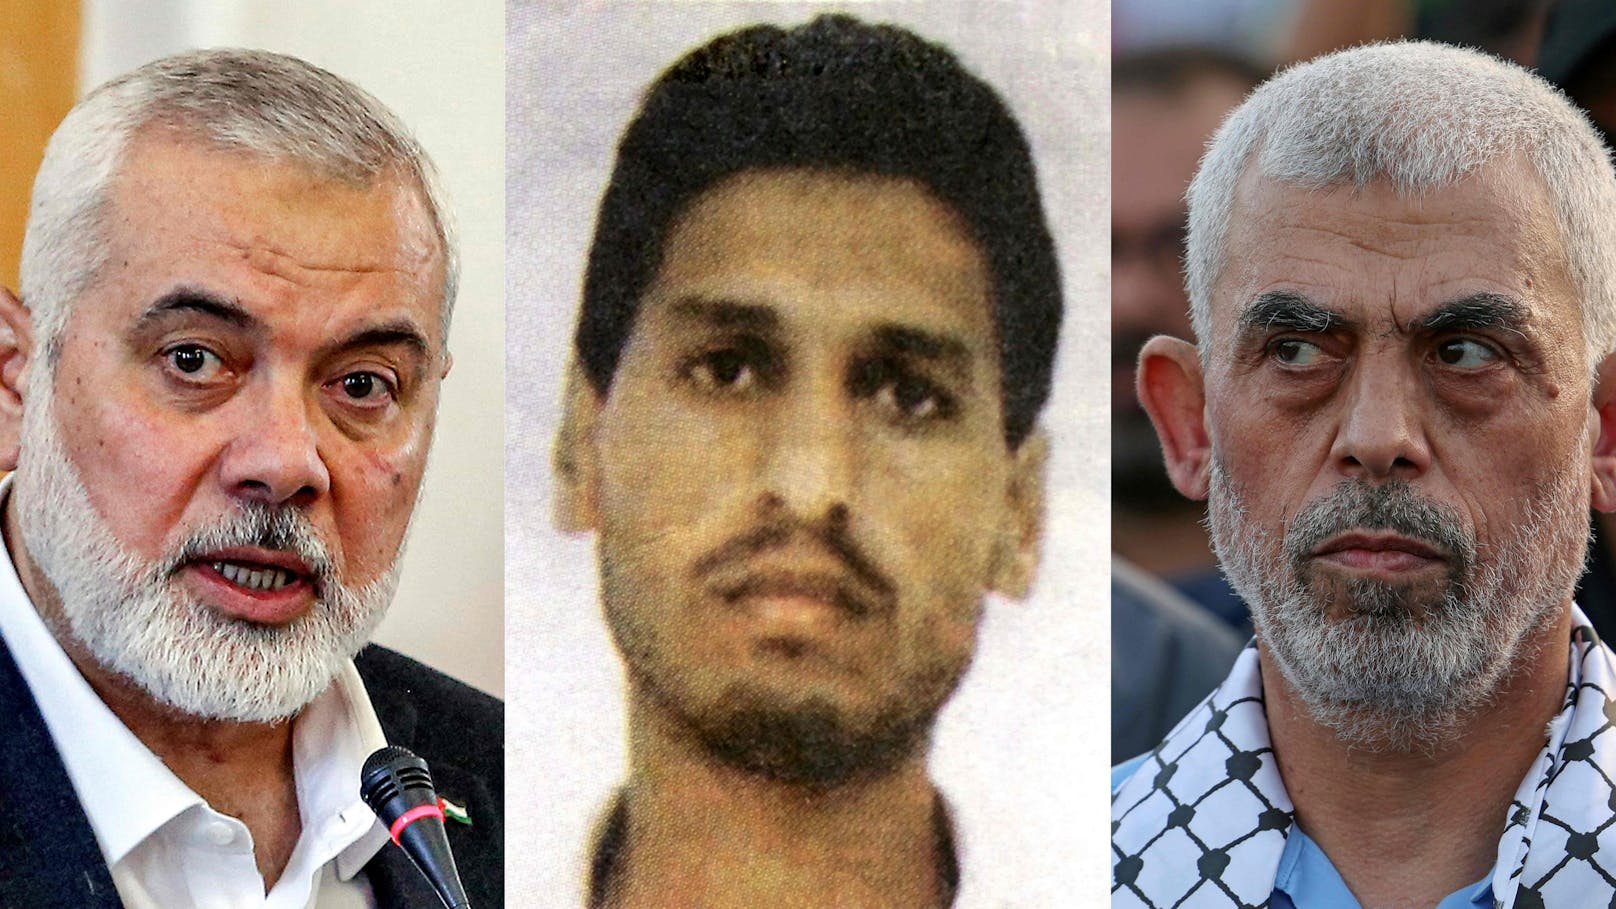 Die militant-islamistische Hamas hat den Antrag des Chefanklägers am Internationalen Strafgerichtshof (Mitte im Bild) auf Haftbefehle für Ismail Haniyeh, Mohammed Deif und Yahya Sinwar (v.l.n.r.) verurteilt.